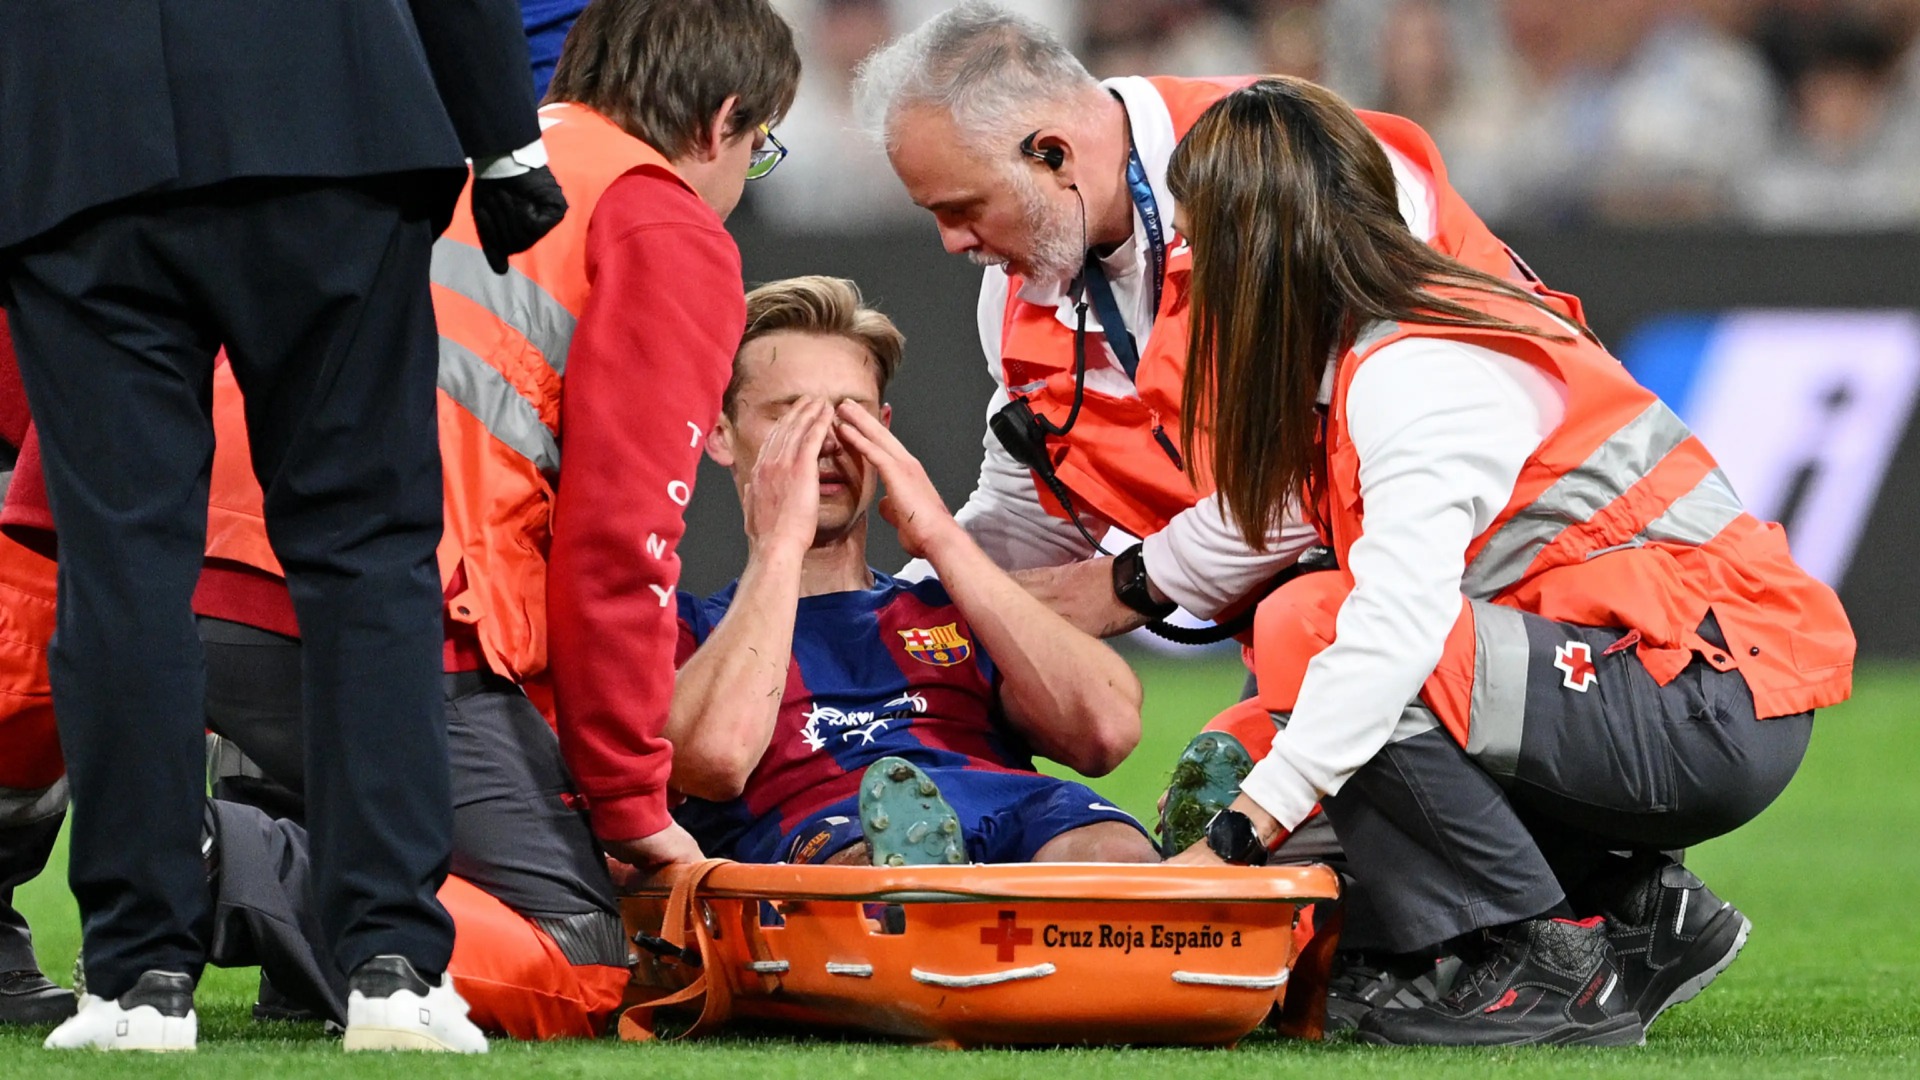 El centrocampista neerlandés Frenkie de Jong se perderá lo que resta de temporada con el Barcelona por una lesión de tobillo